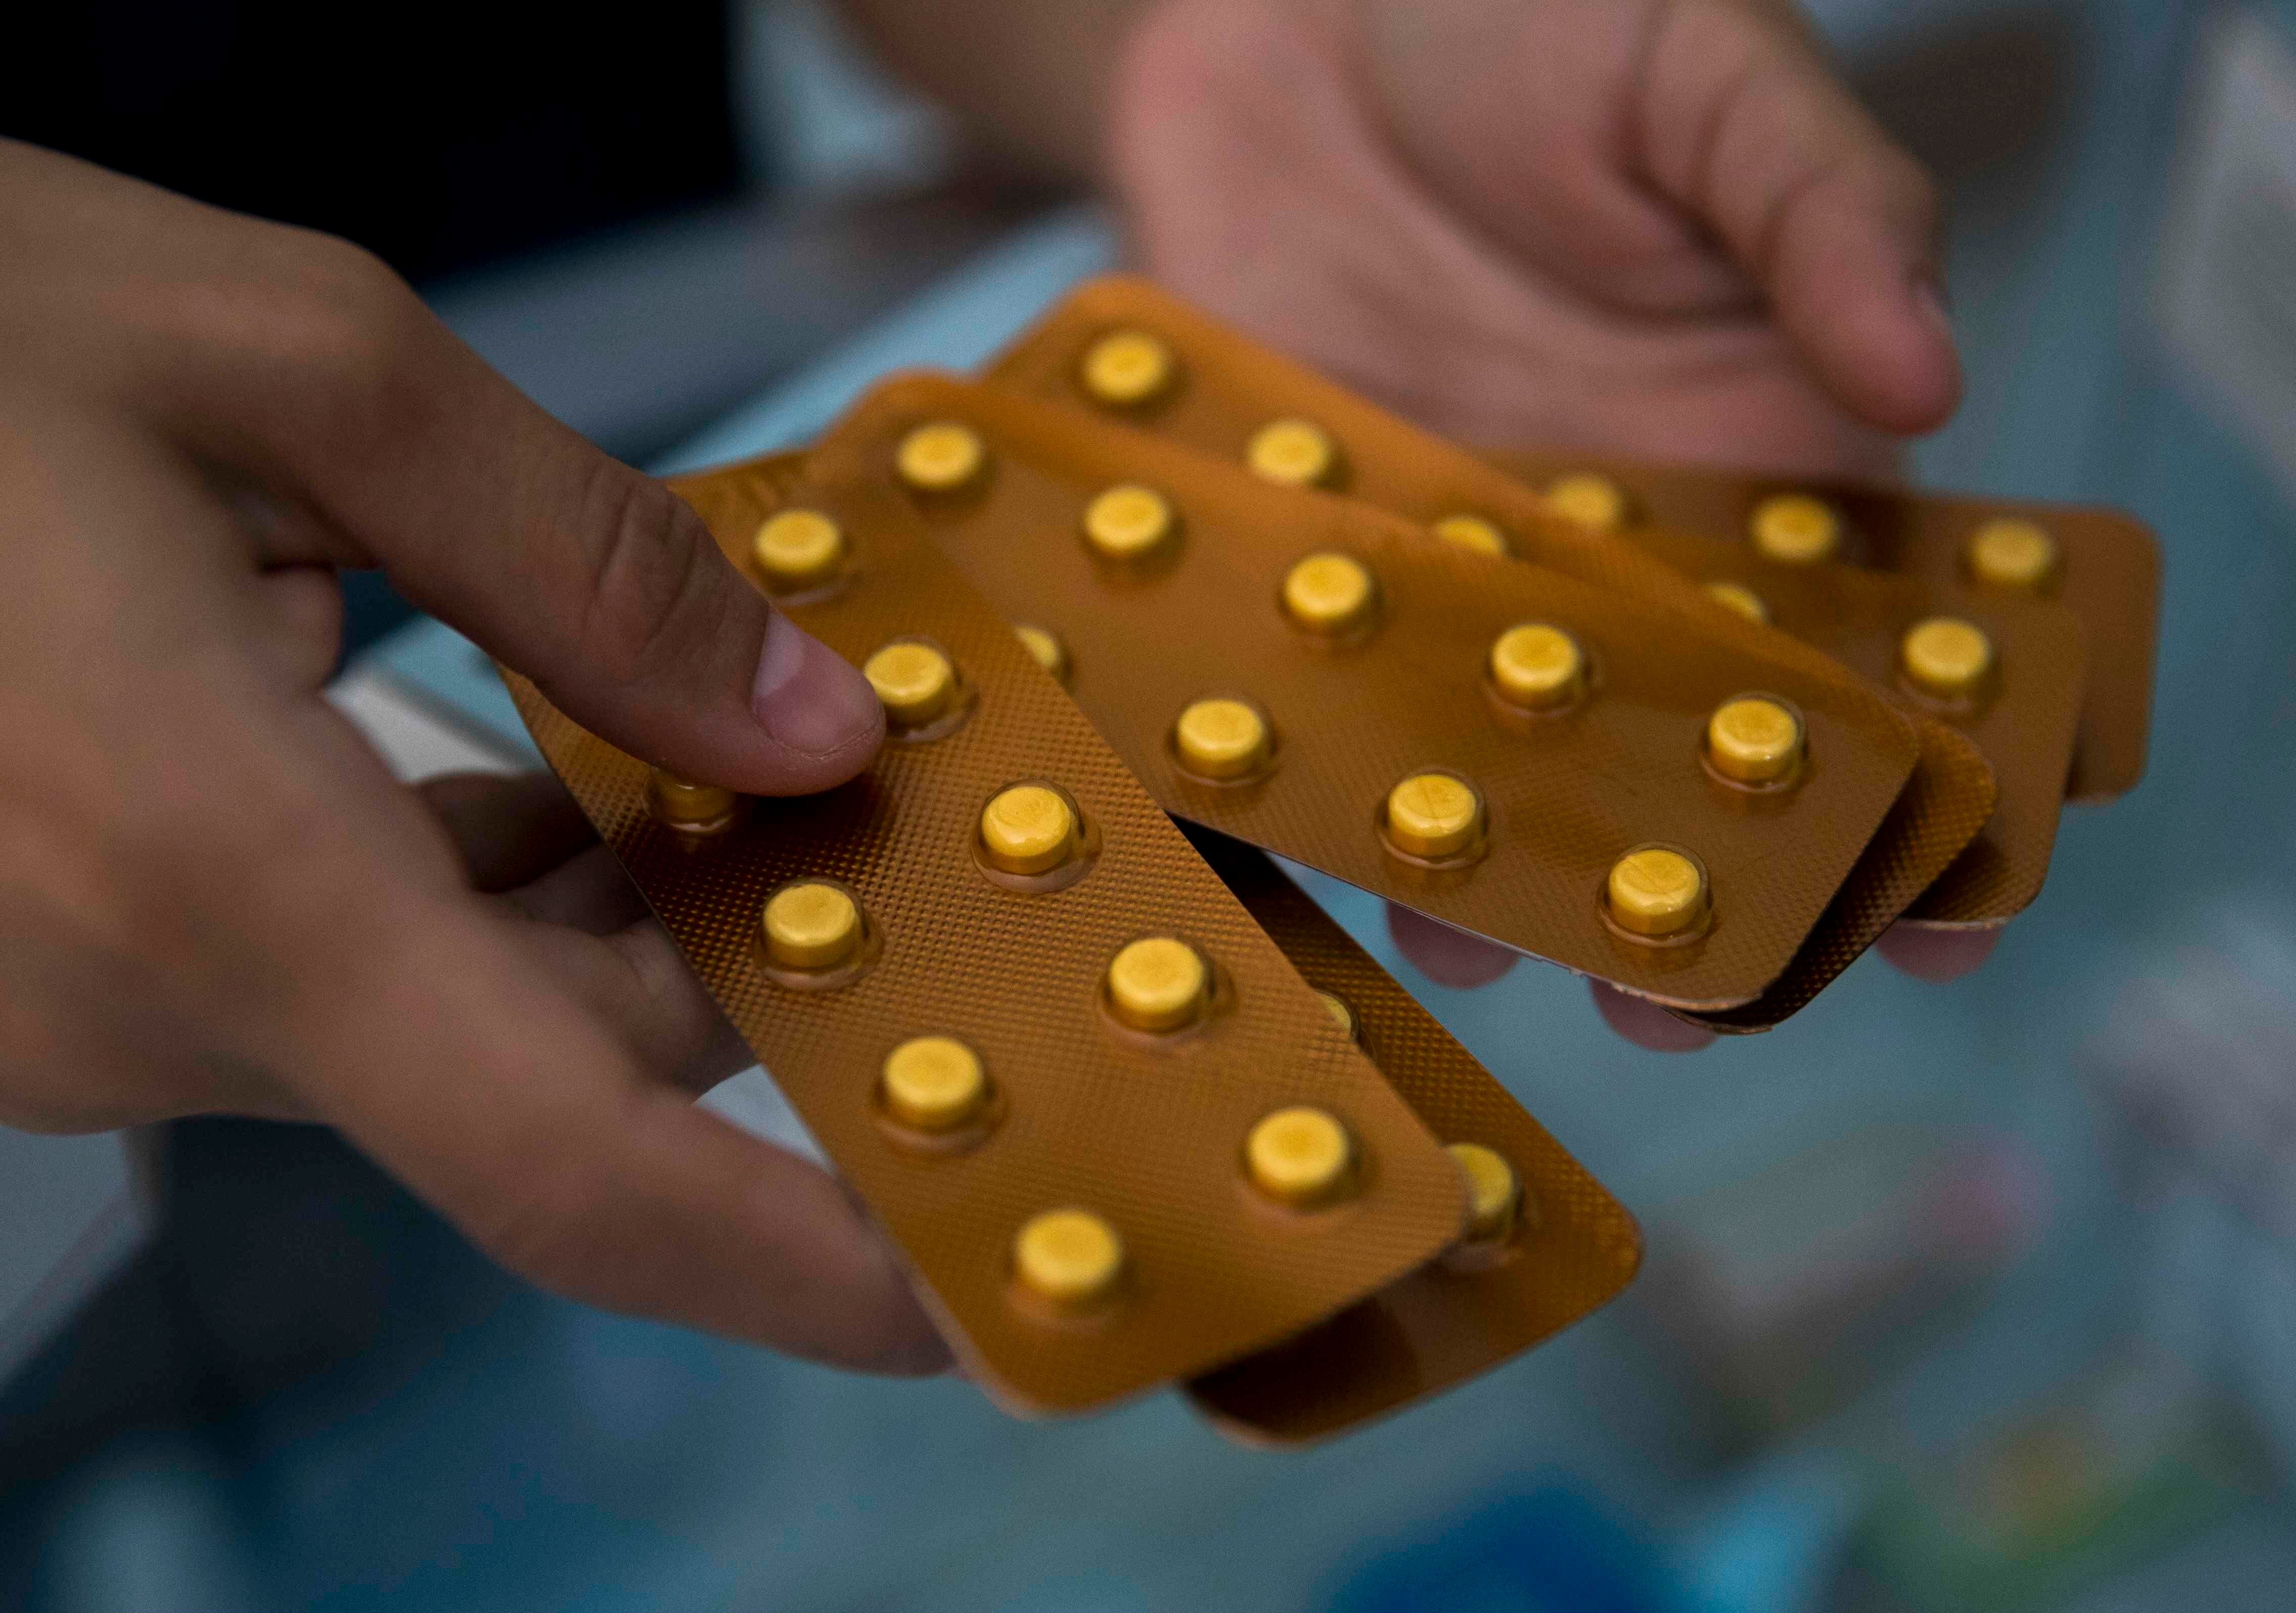 La dexametasona es el medicamento que fue prohibido desde el inicio de la pandemia para tratar la enfermedad (Foto: ReutersEFE/Jorge Torres)
